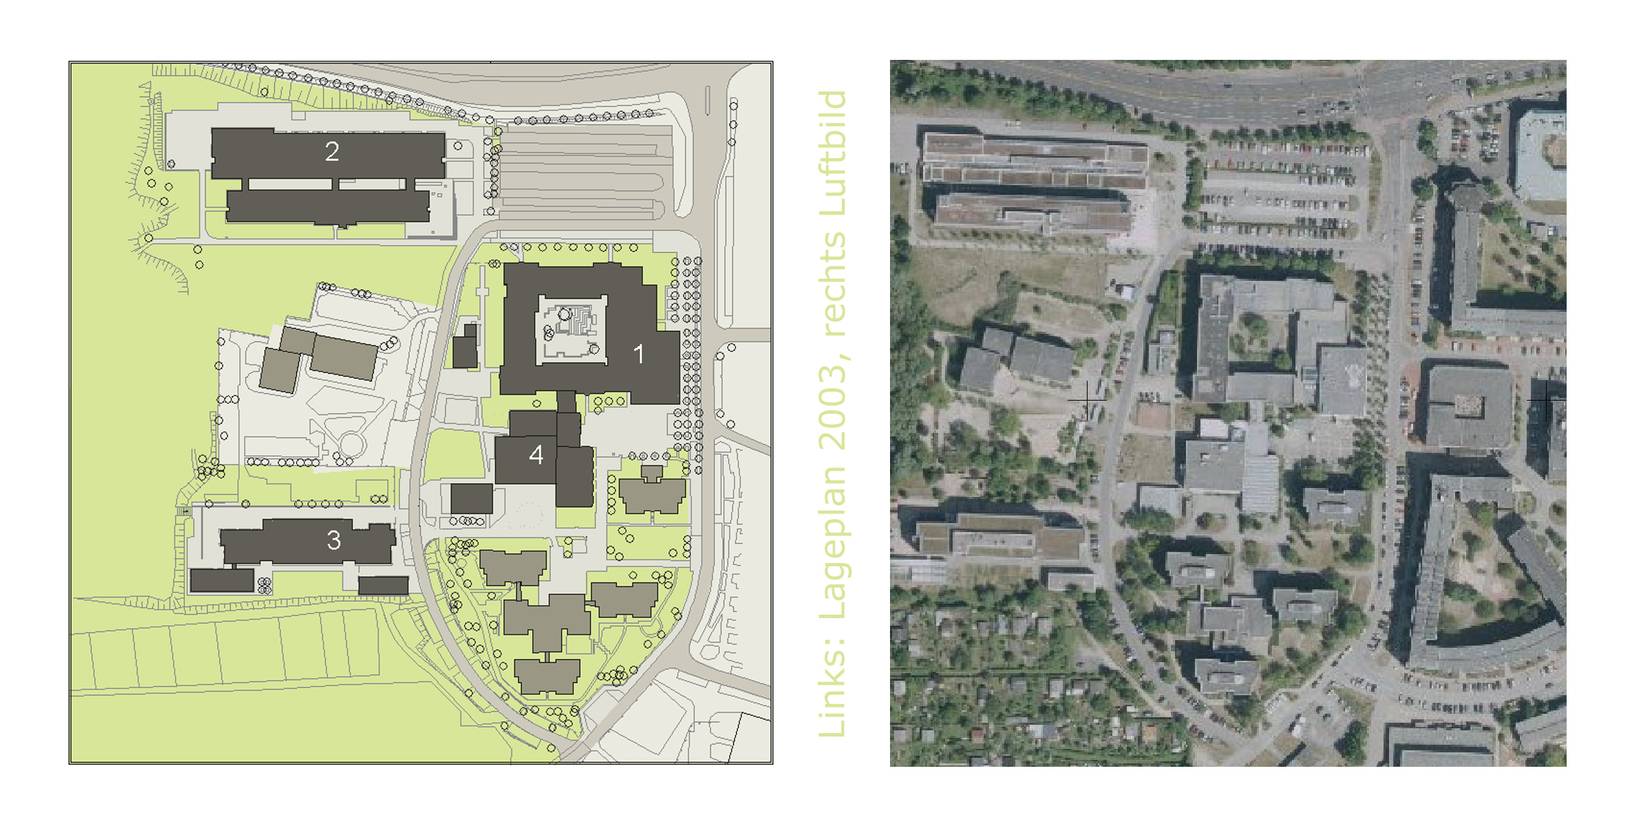 Lageplan des Campus der Hochschule Neubrandenburg © Geobasisdaten Landesamt für innere Verwaltung Mecklenburg-Vorpommern